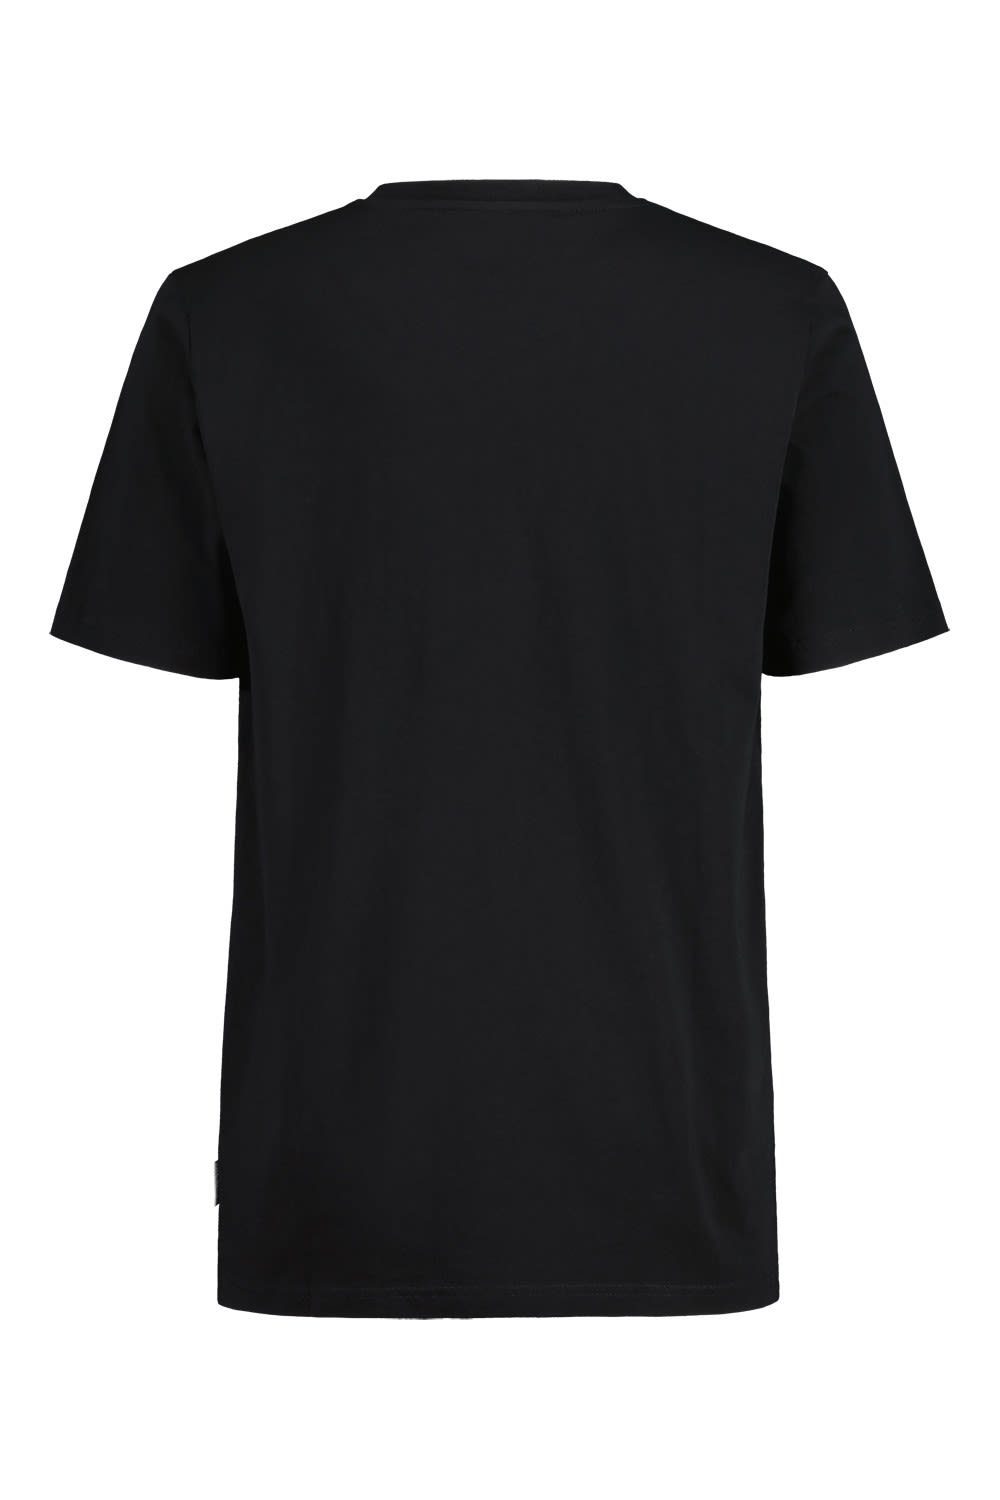 Kurzarm-Shirt T-shirt Semerum. Maloja Maloja M T-Shirt Herren